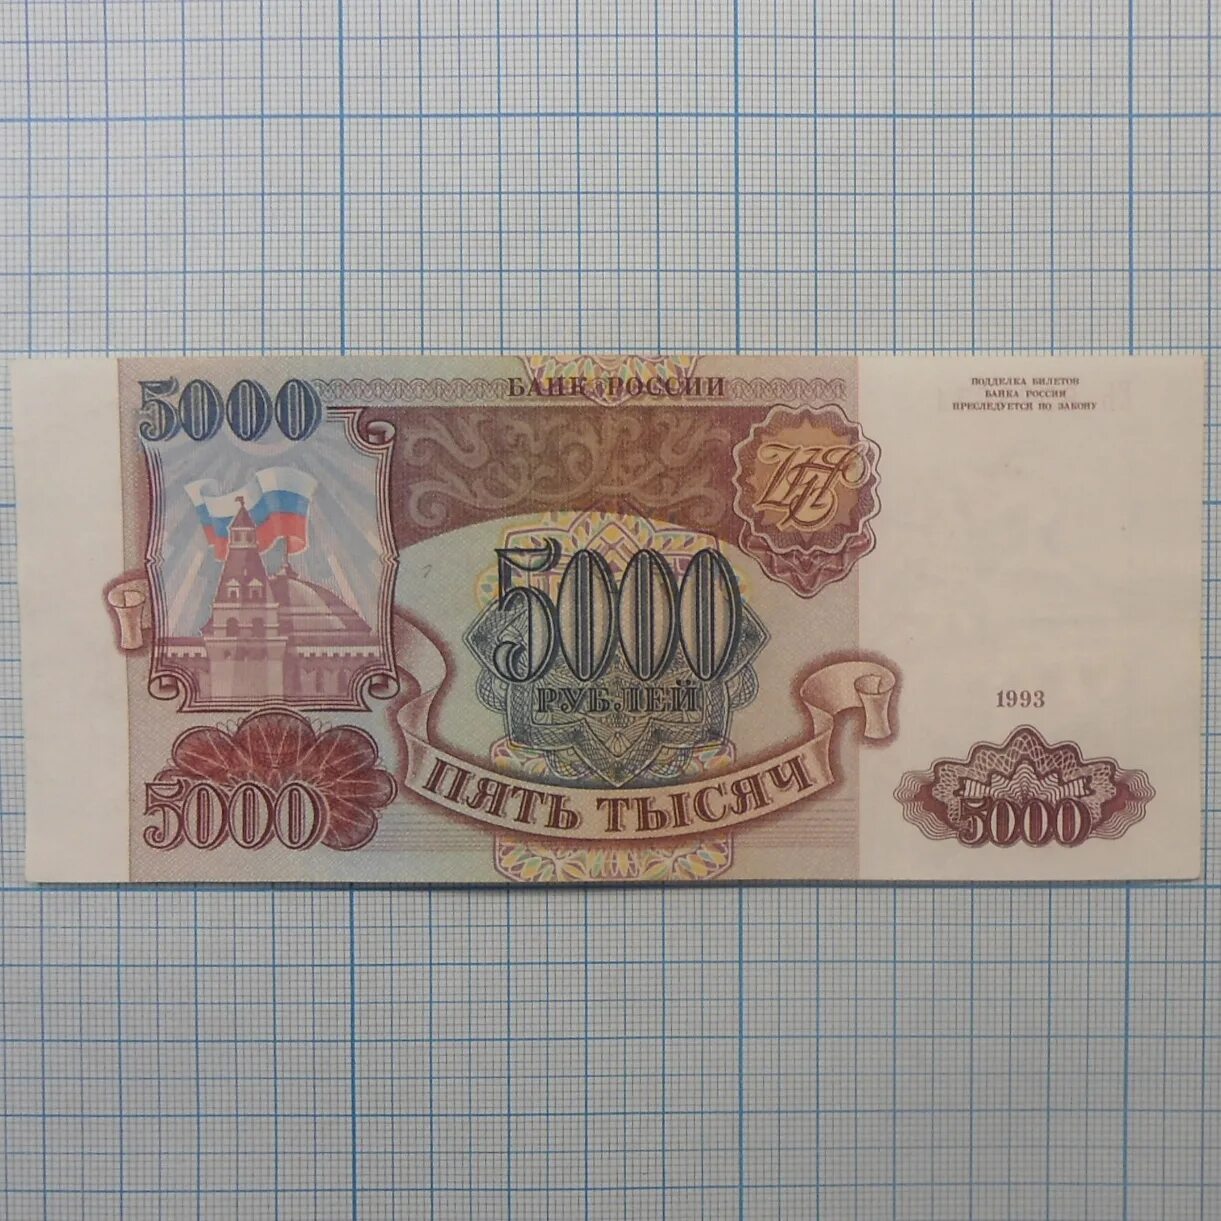 5000 рублей 1993. 5000 Рублей 1992 и 1993. 5000 Рублей 1994. Банкнота 5000 1992 года. Купюра 5000 1993 года.